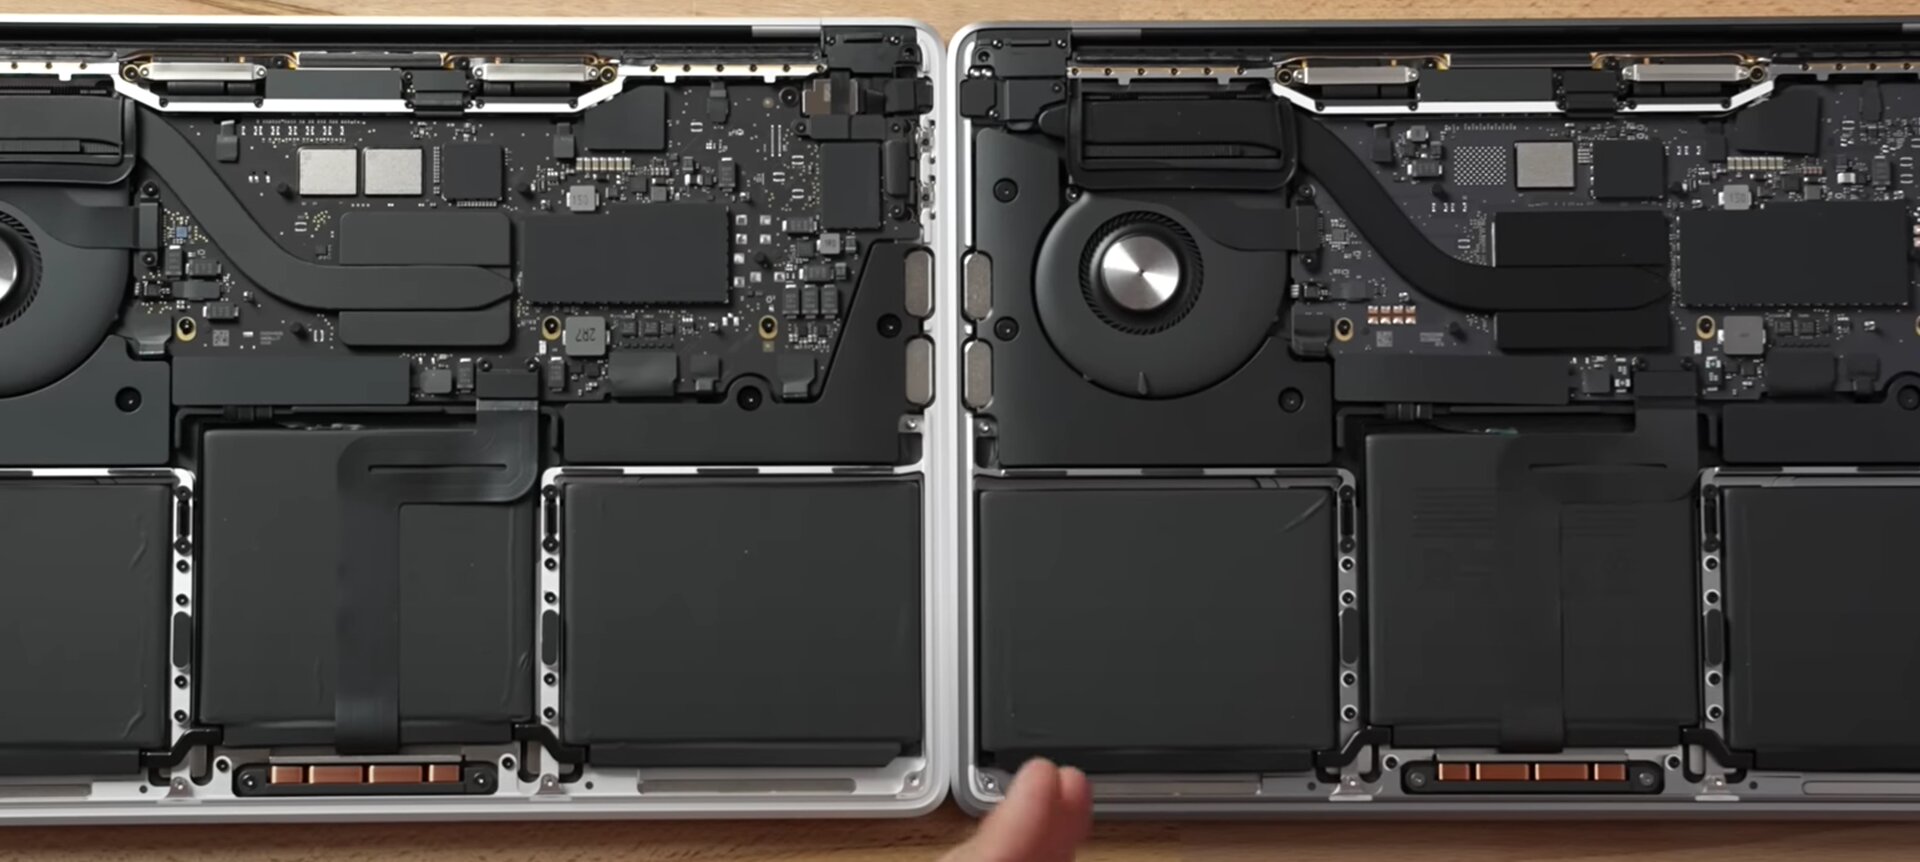 Links MacBook Pro 13 mit M1 und 2 NAND-Chips, rechts MacBook Pro 13 mit M2 und nur 1 NAND-Chip